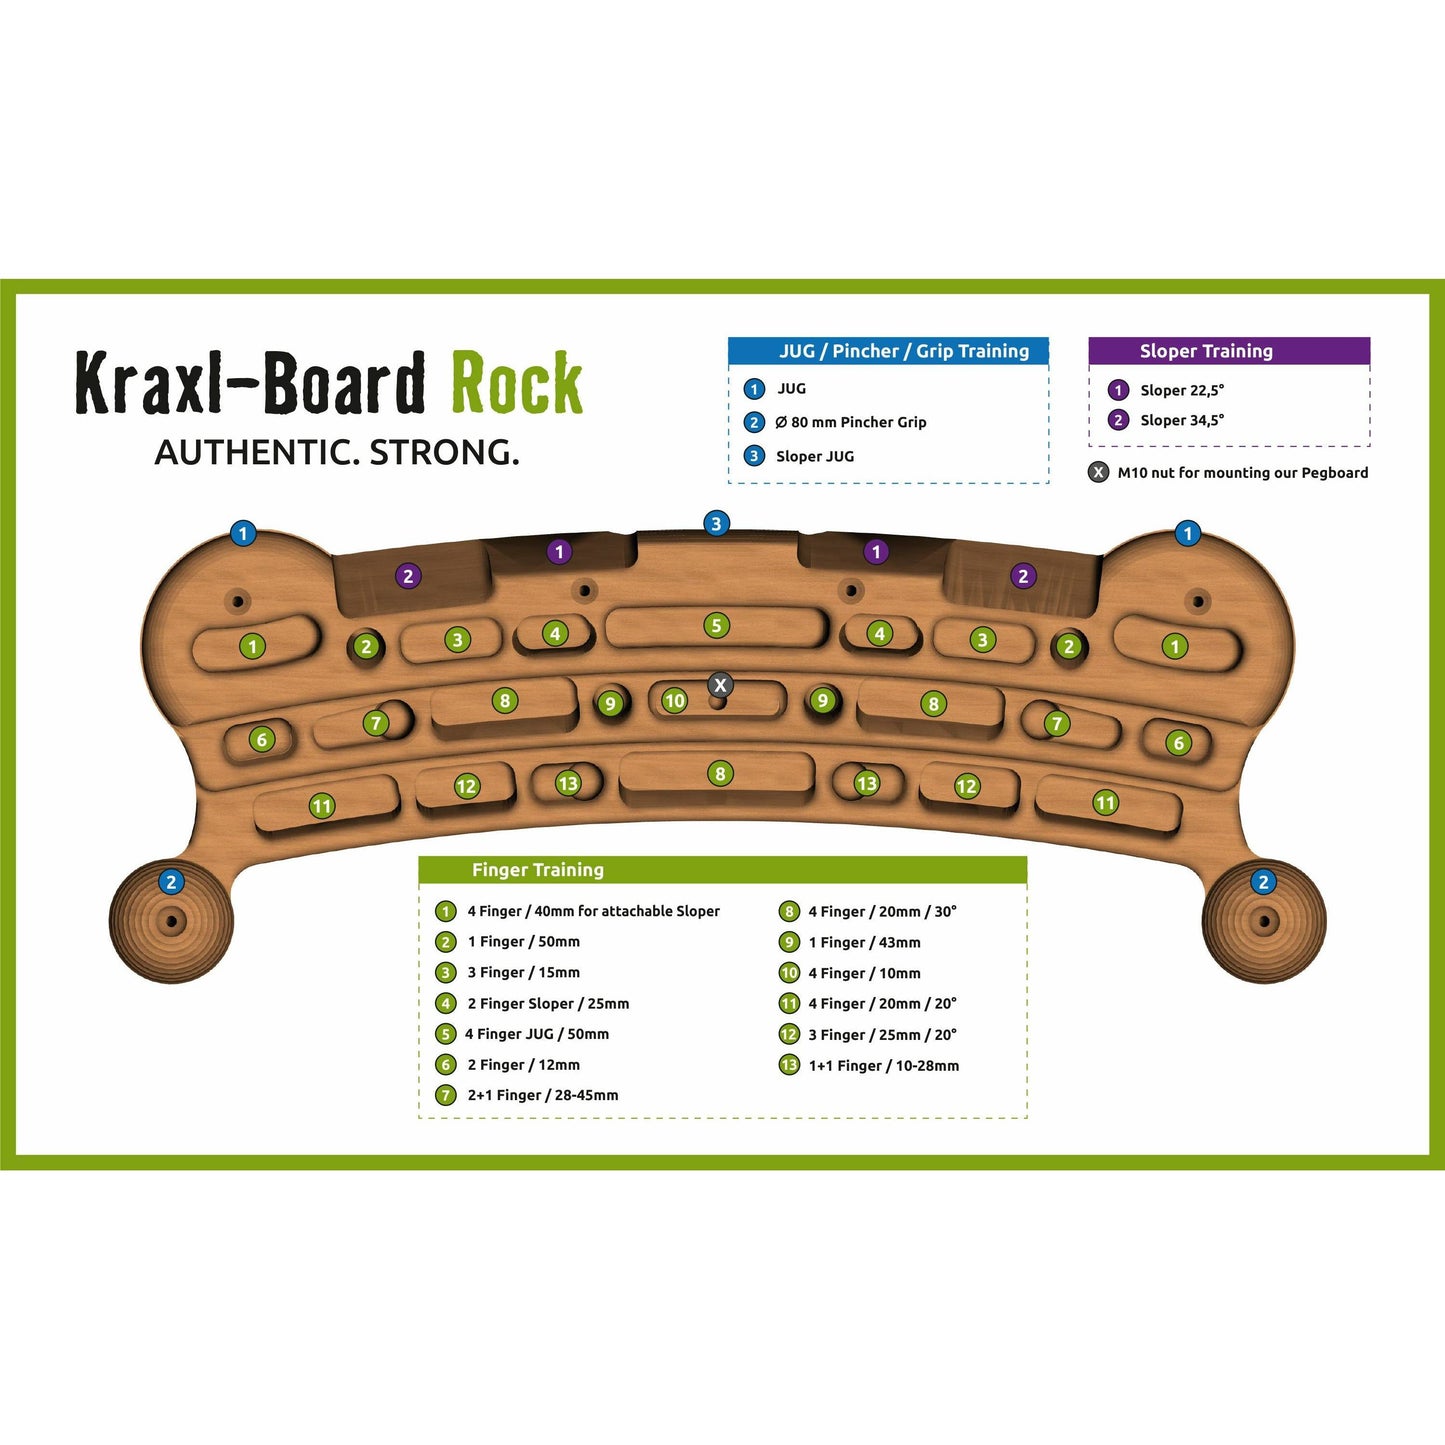 Kraxlboard Rock B-stock- Notre kit complet à prix réduit pour les débutants et les professionnels. Grand choix de poignées et extensible